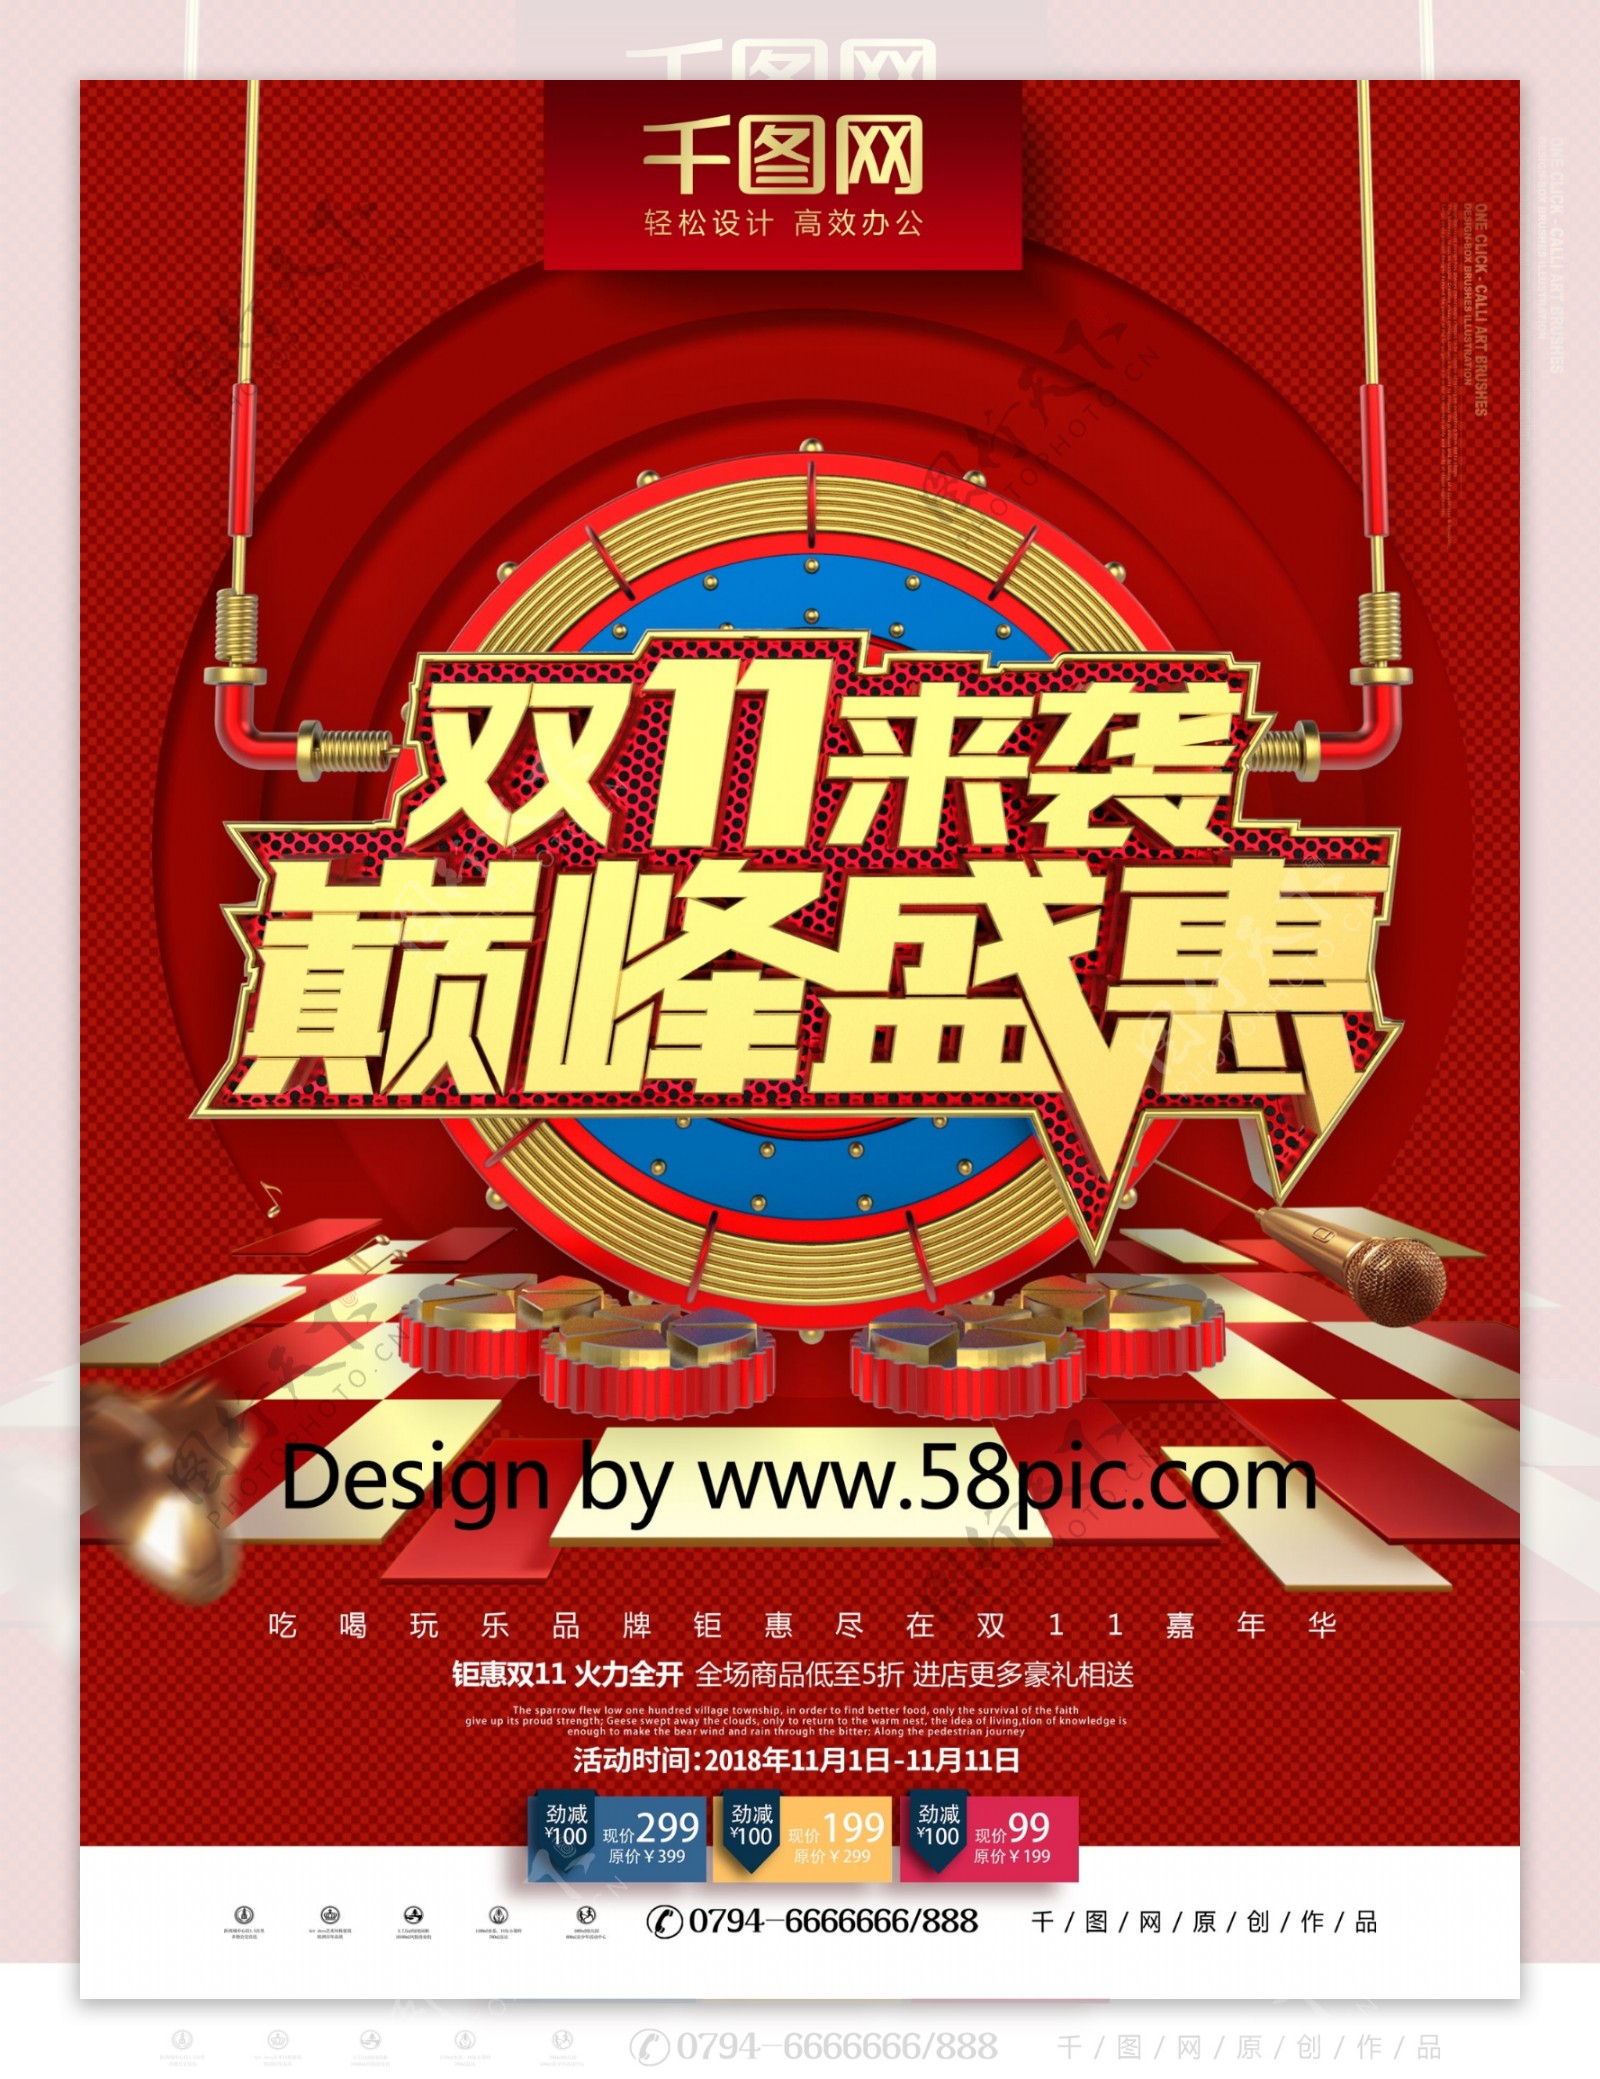 C4D创意高档红金金属质感双11促销海报